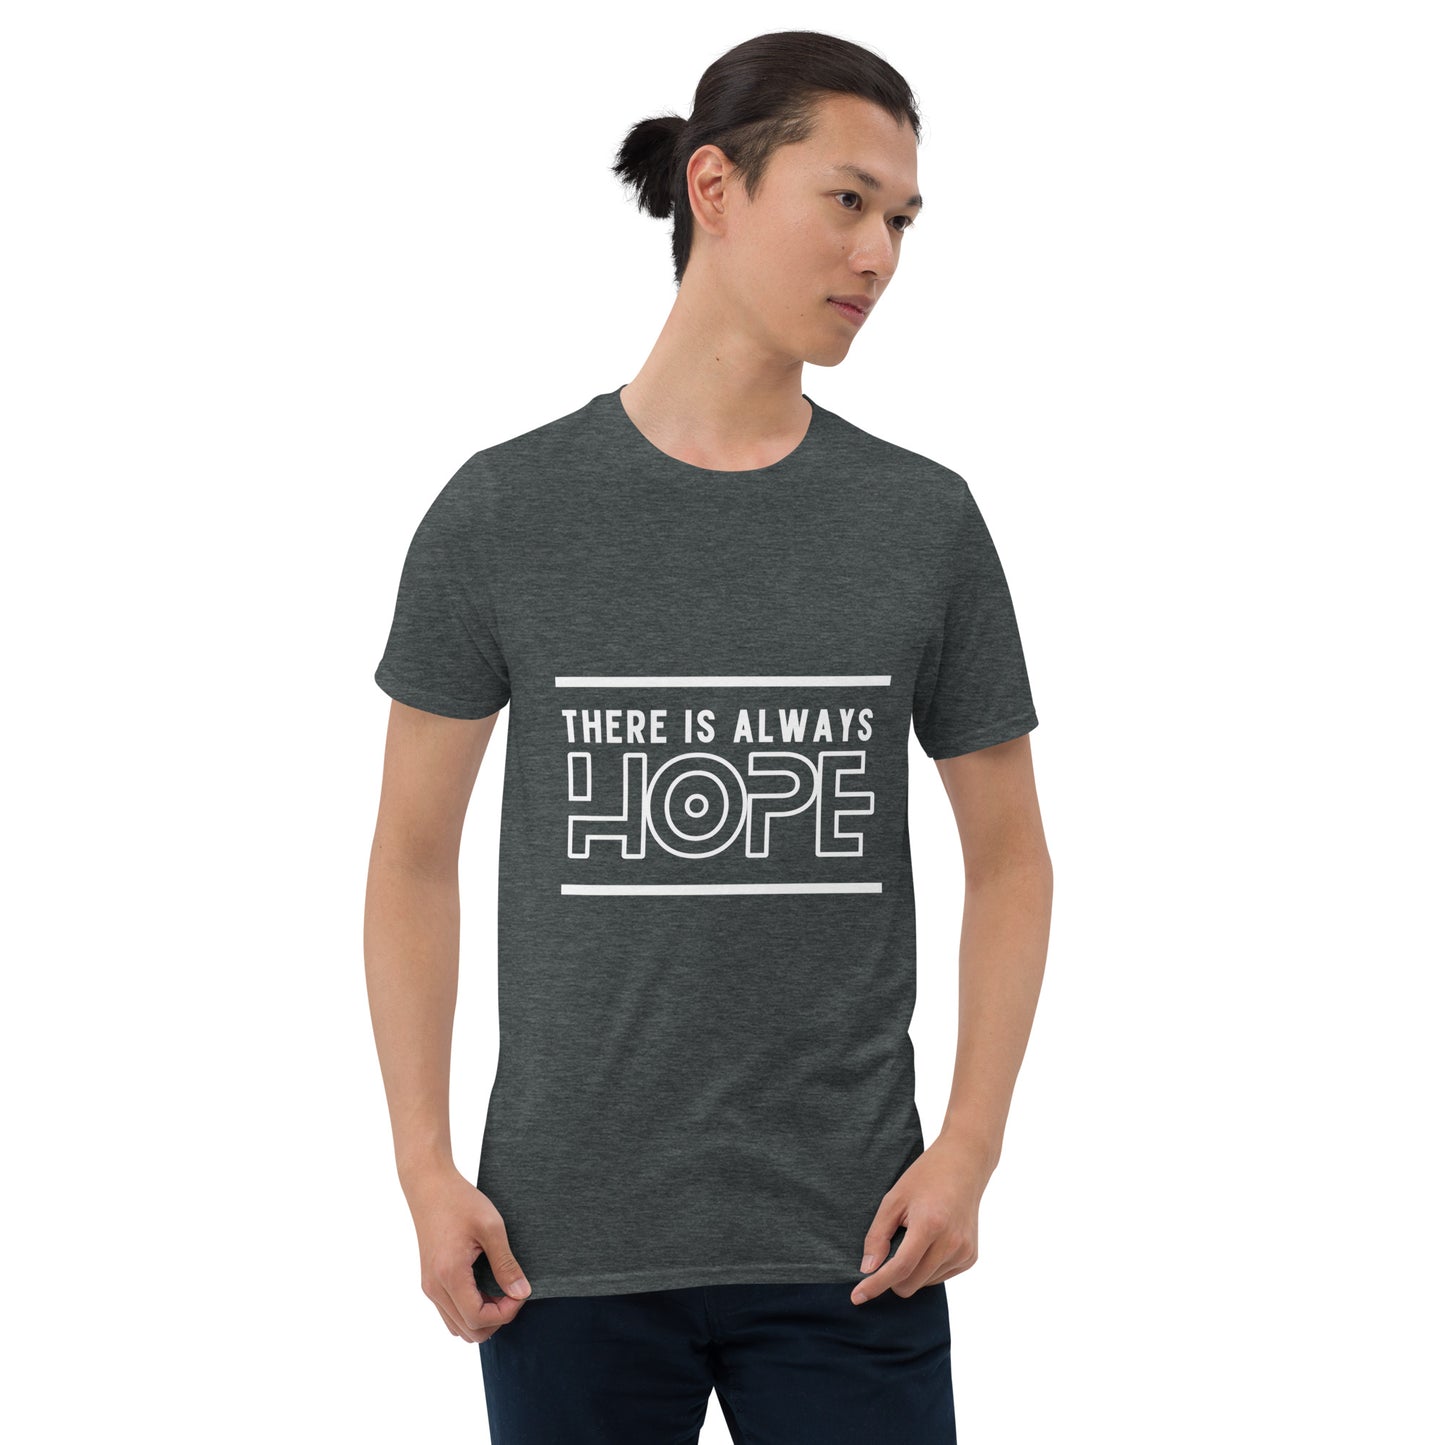 Hope Short-Sleeve T-Shirt